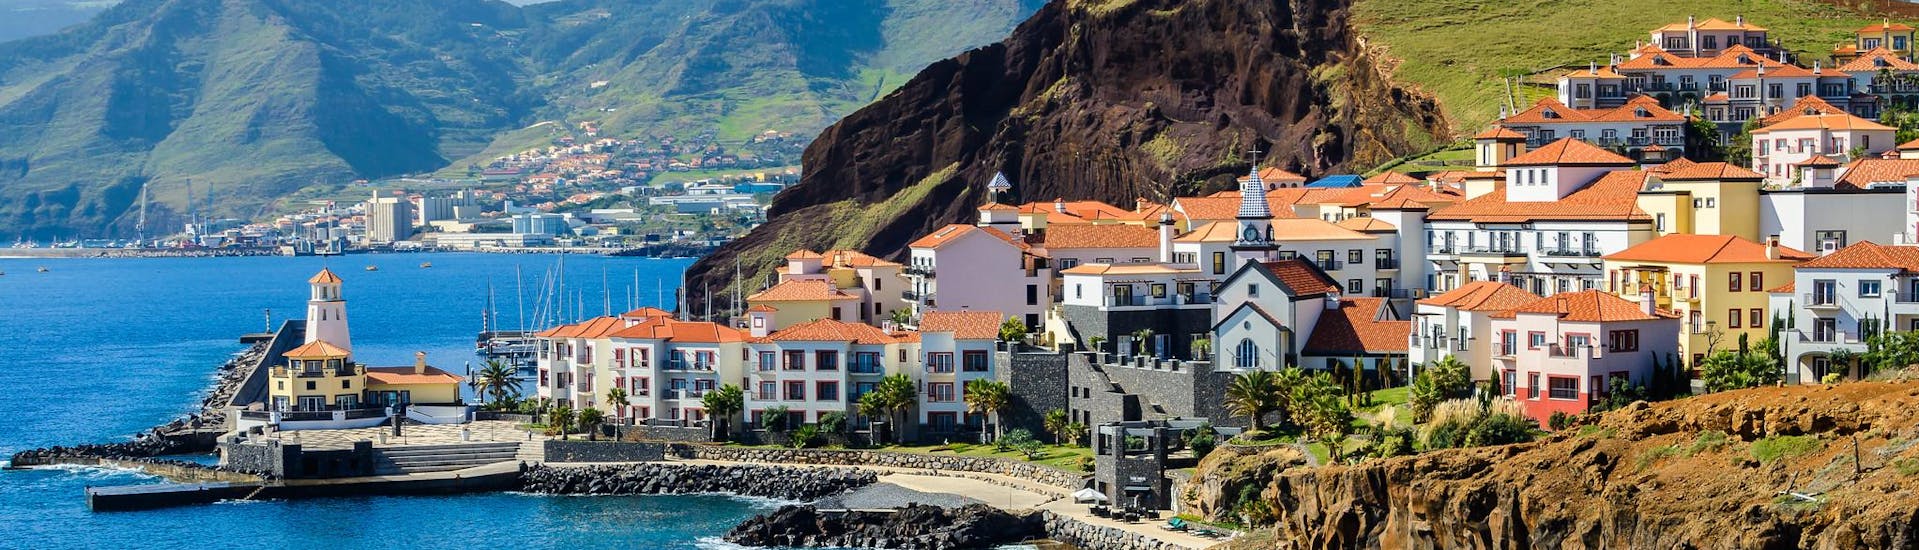 Ausblick auf ein Dorf auf Madeira, einer wunderschönen Insel, die man mit einer Bootstour entdecken kann.